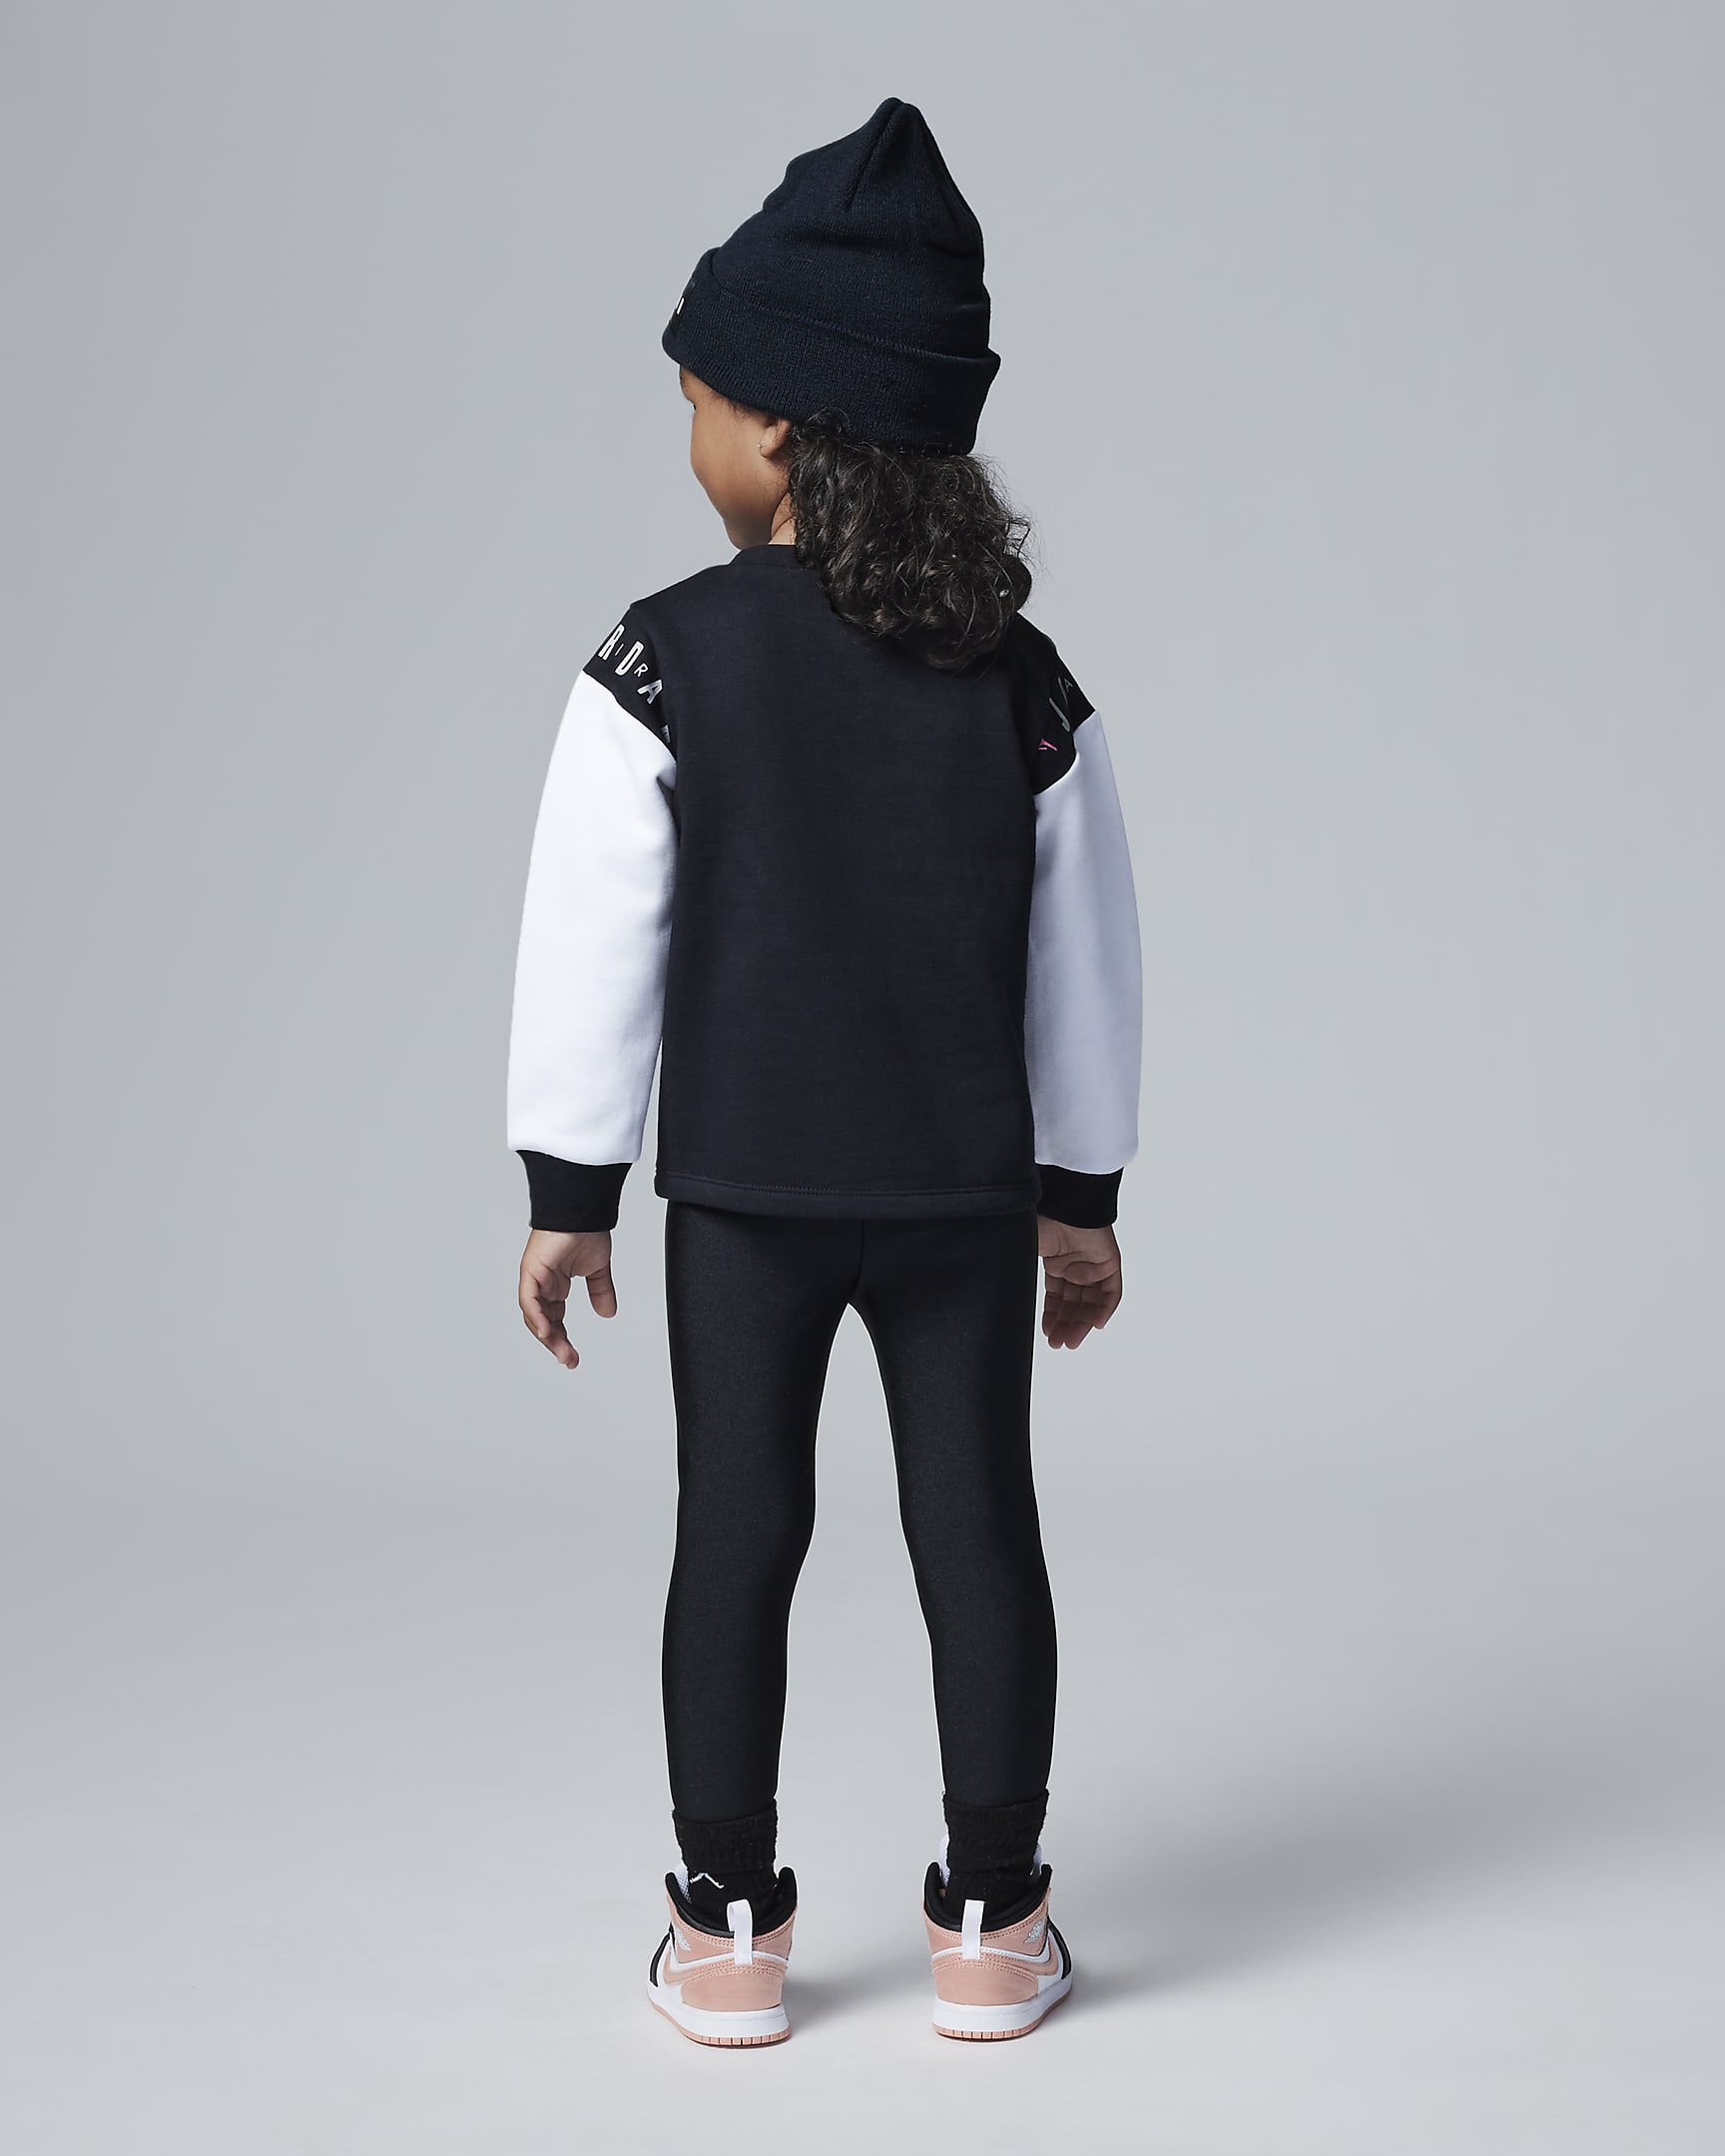 Jordan Holiday Shine Leggings Set Toddler Set. Nike NL